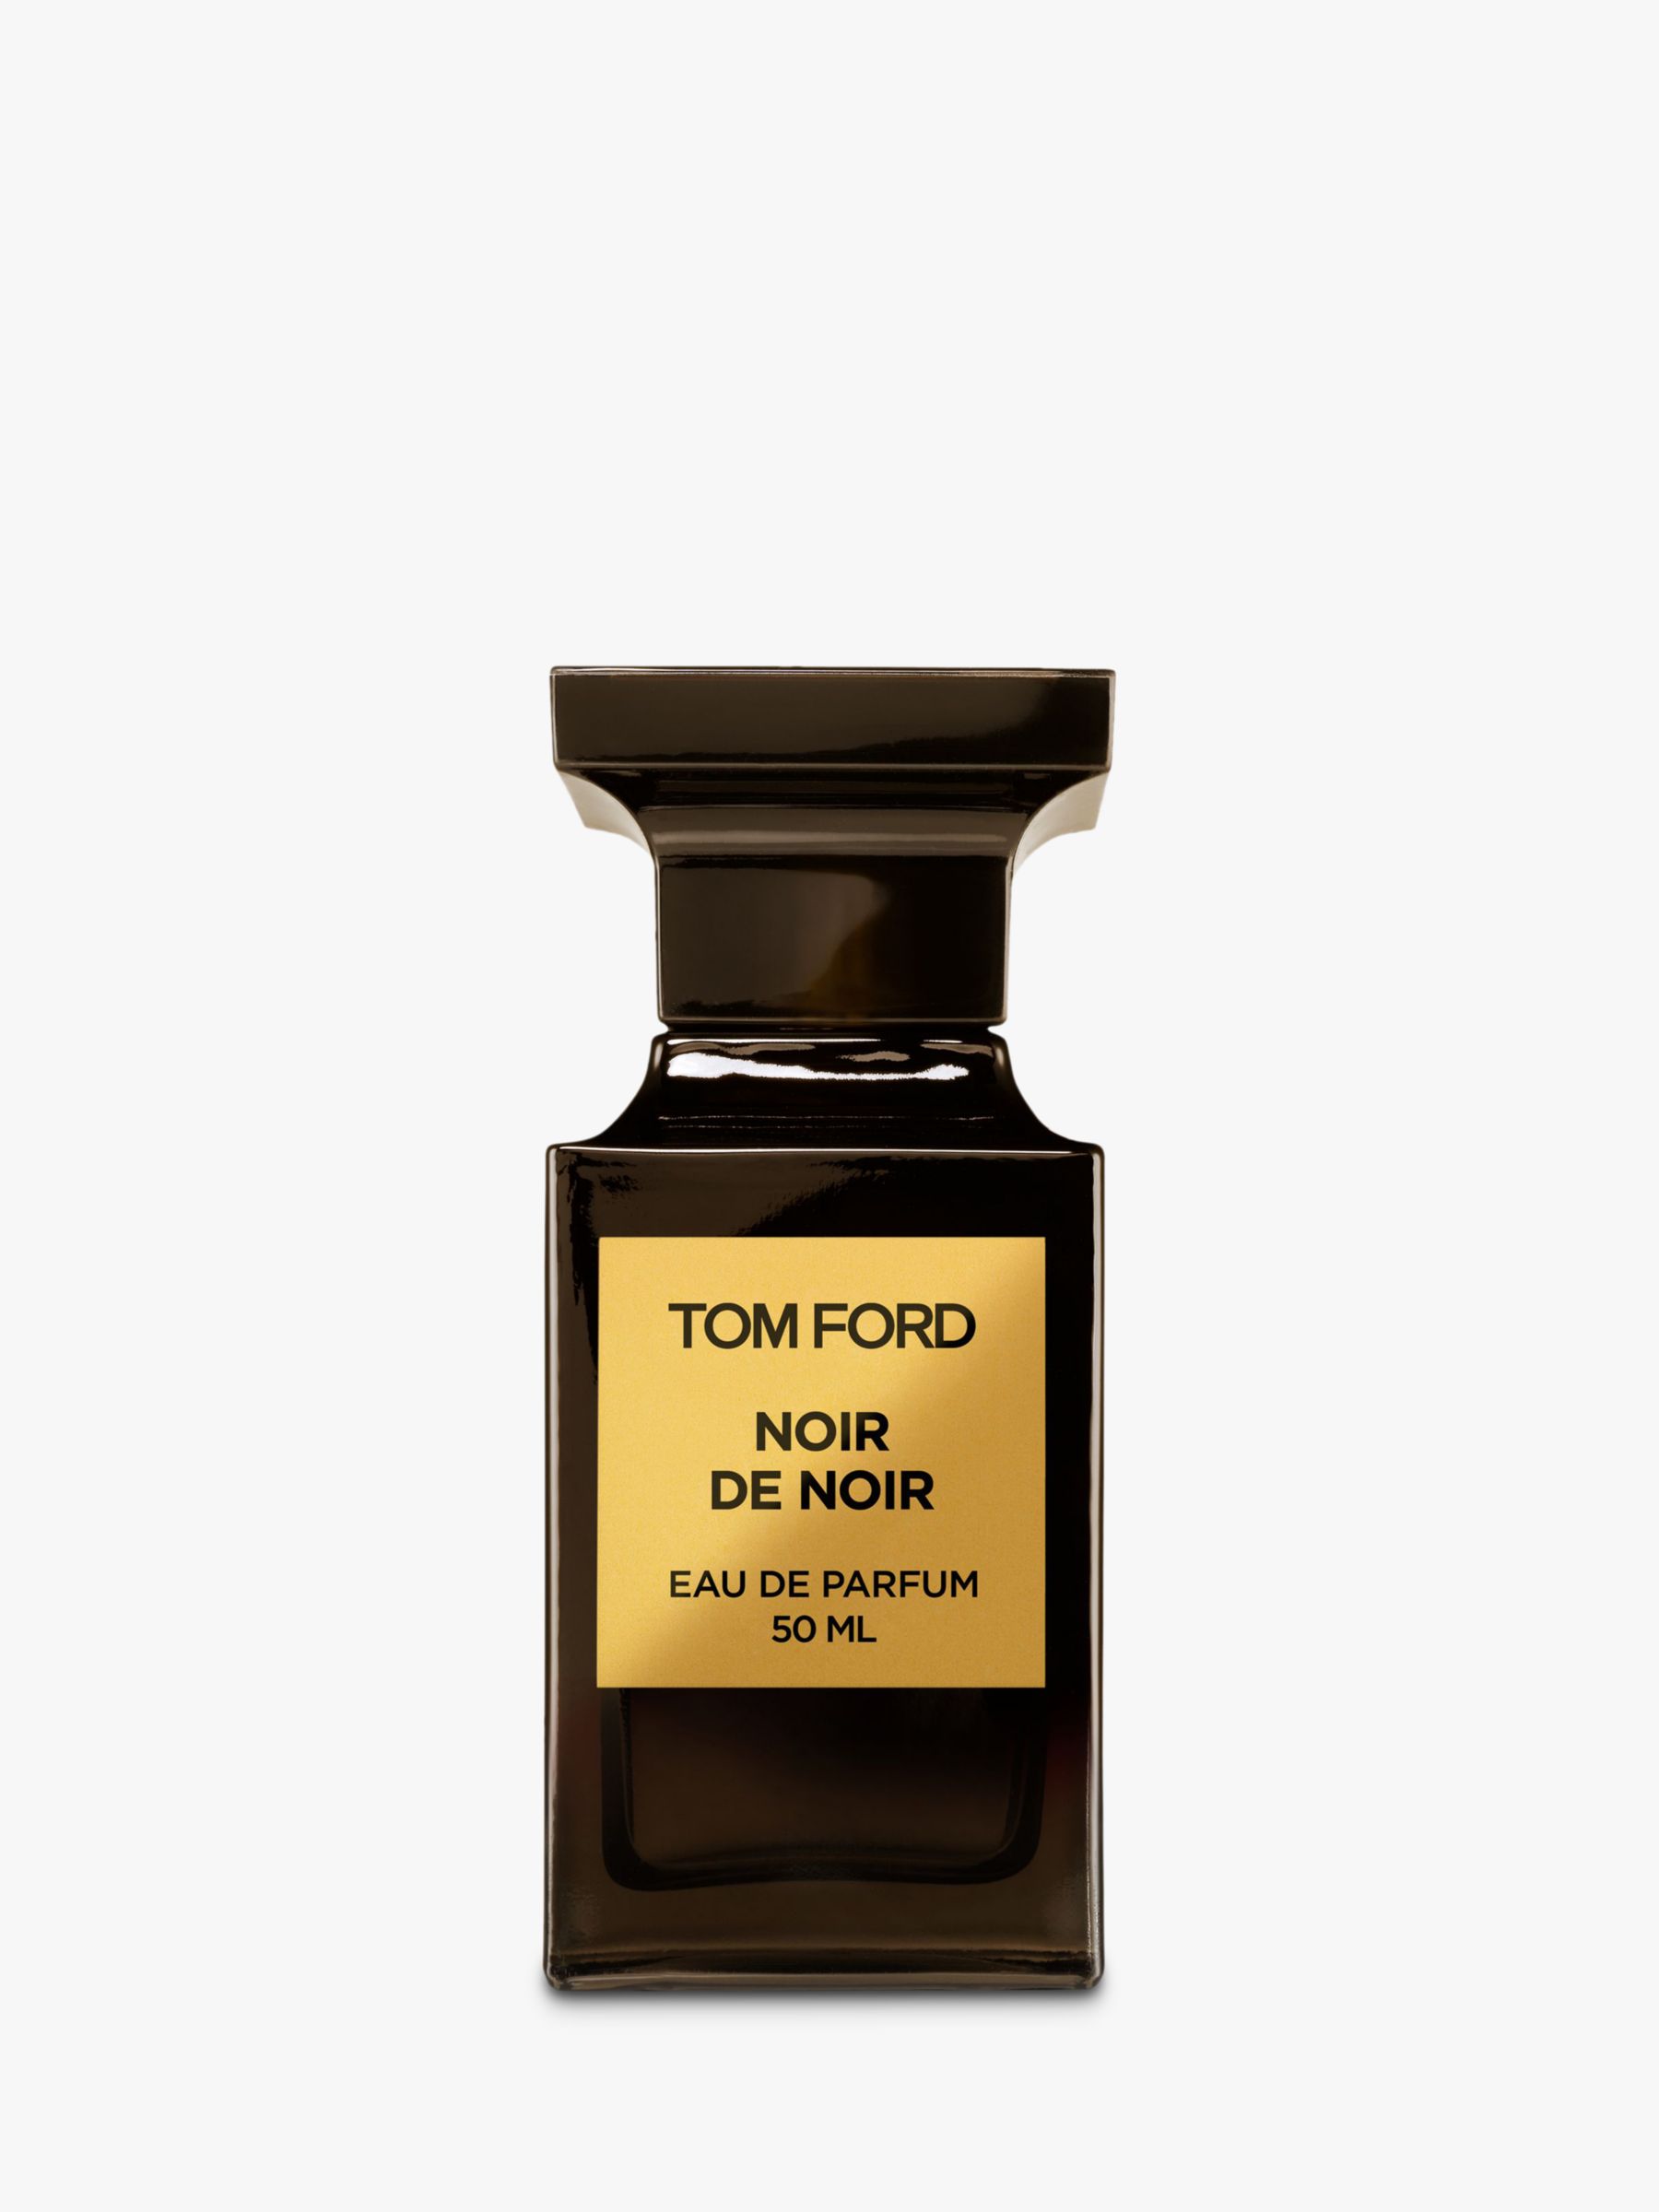 TOM FORD Private Blend Noir De Noir Eau de Parfum, 50ml at John Lewis &  Partners